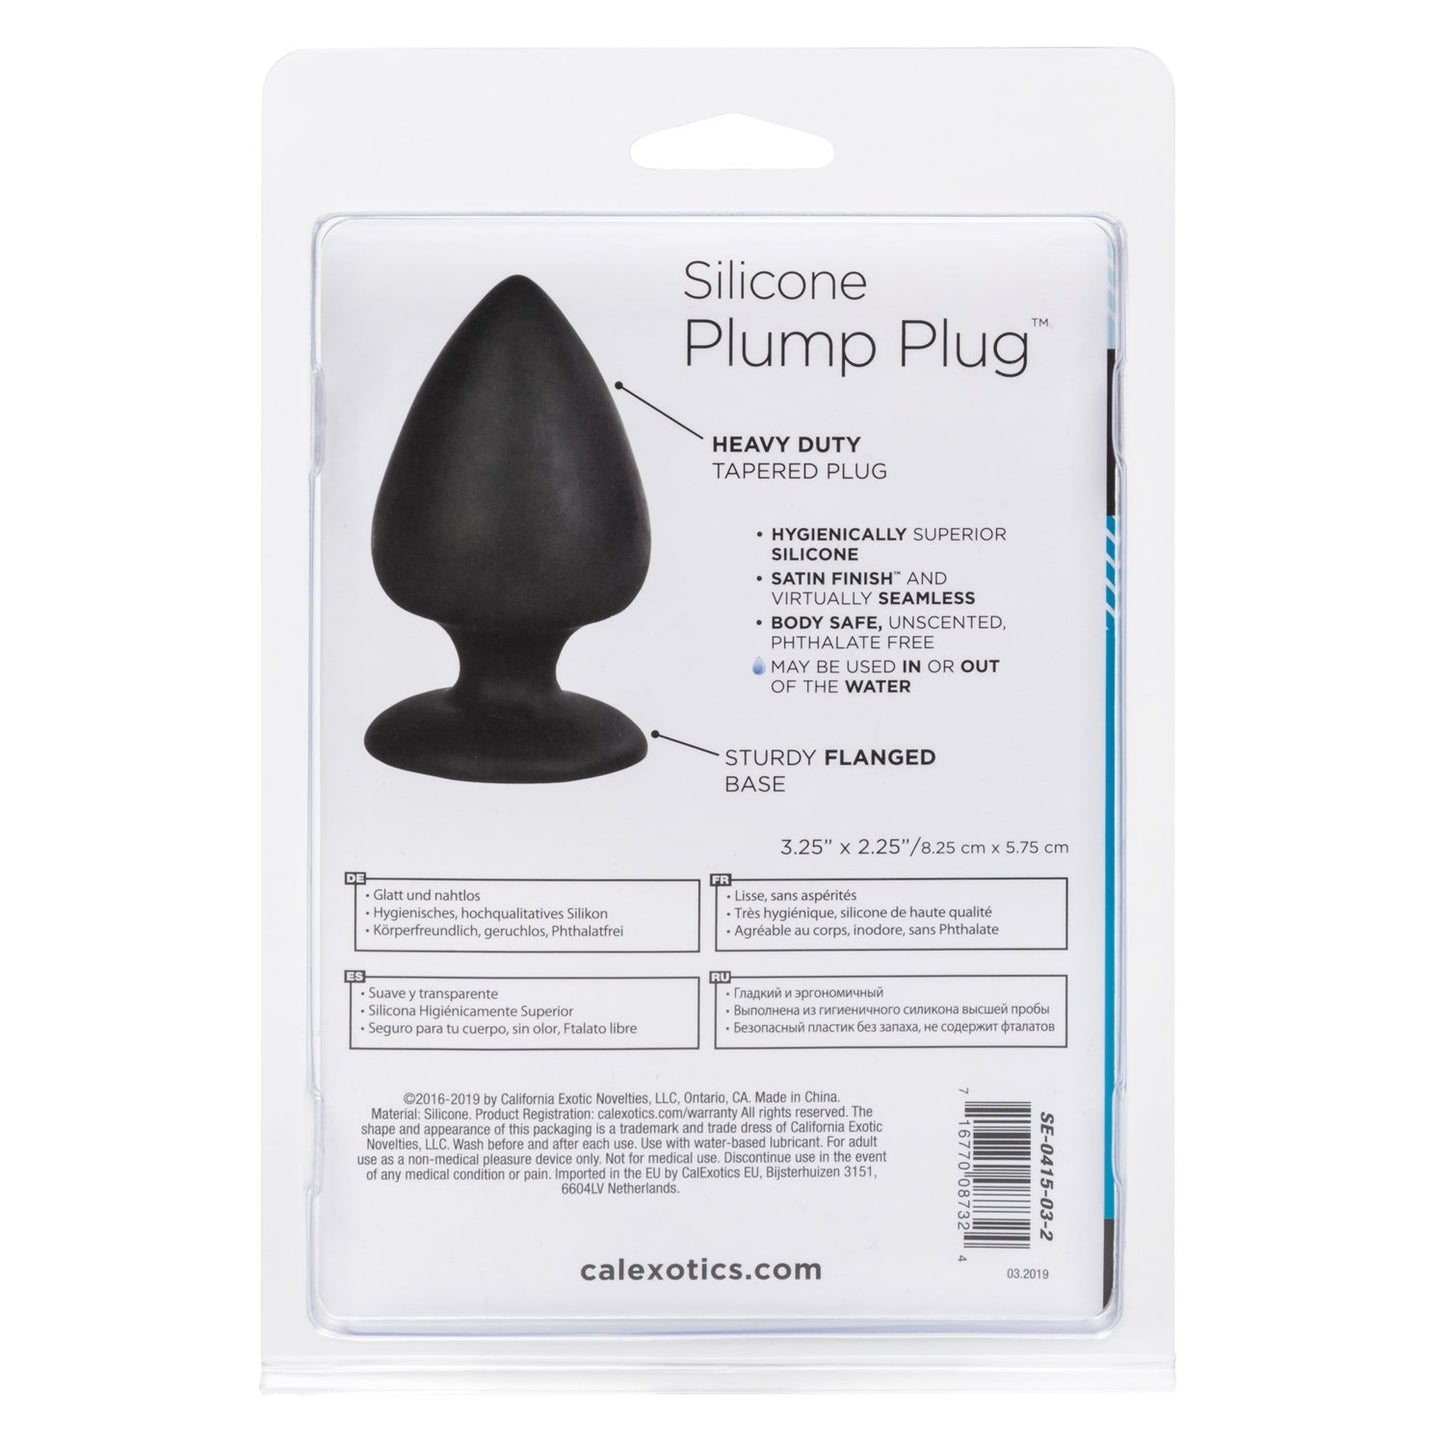 Silicone Plump Plug